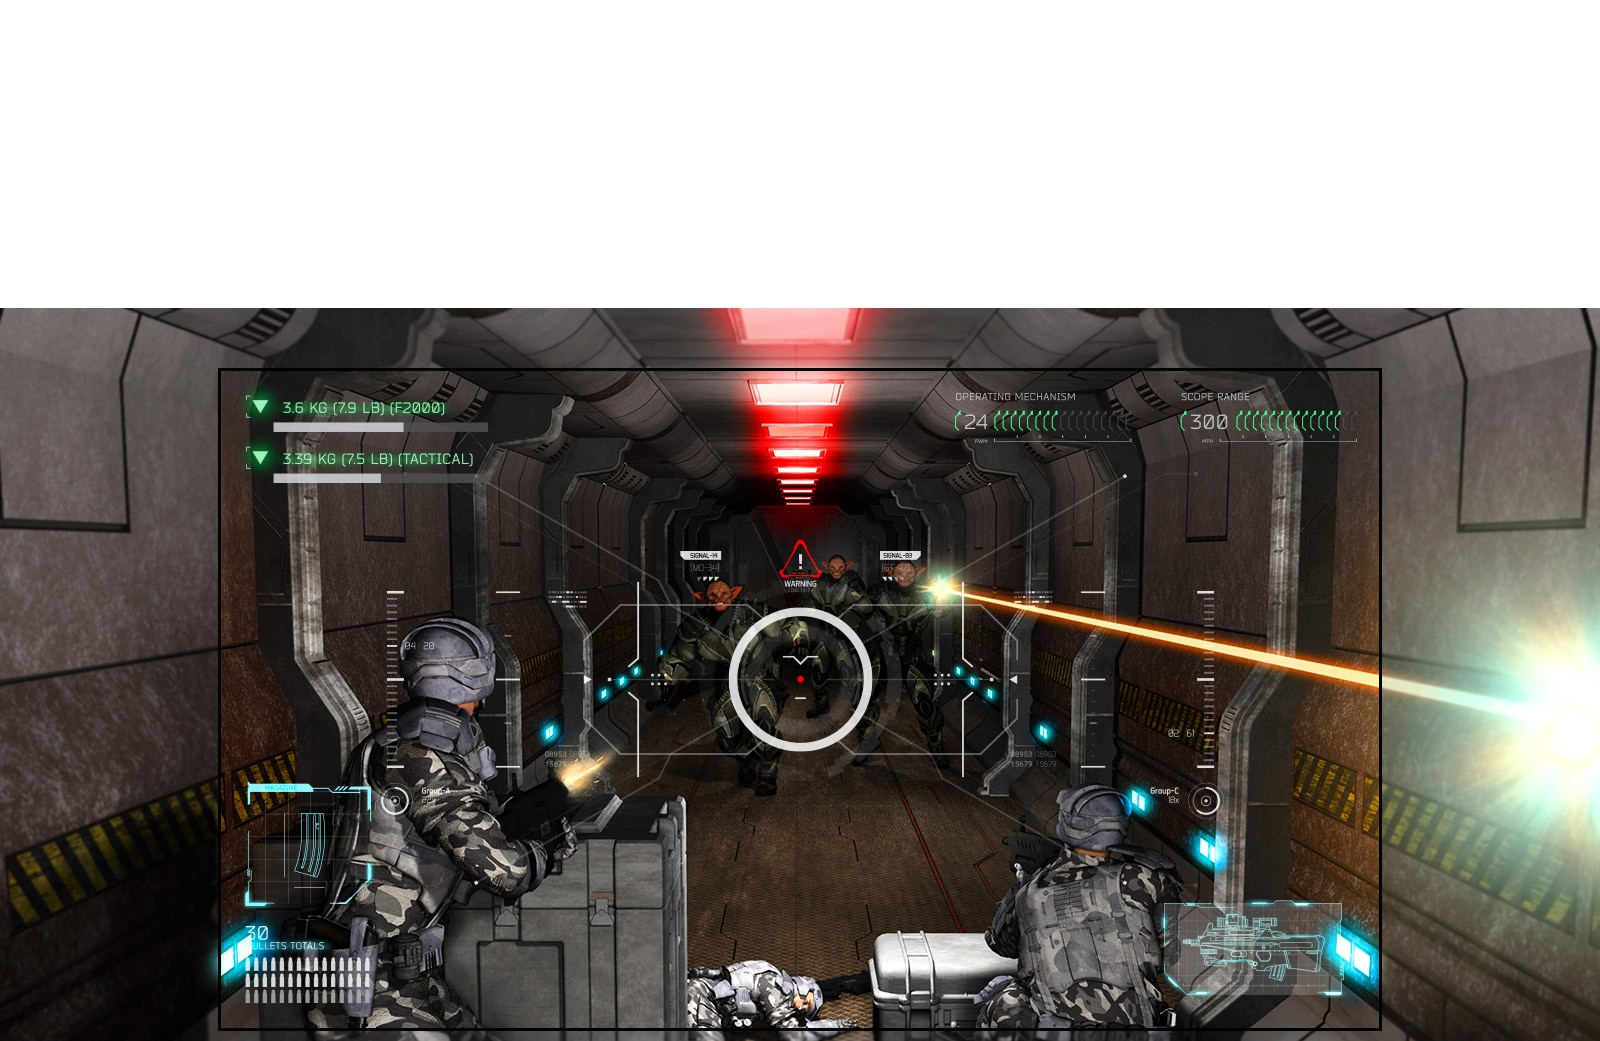 يعرض التلفزيون مشهدًا من لعبة إطلاق نار حيث تغلبت كائنات فضائية بالبنادق على اللاعب.